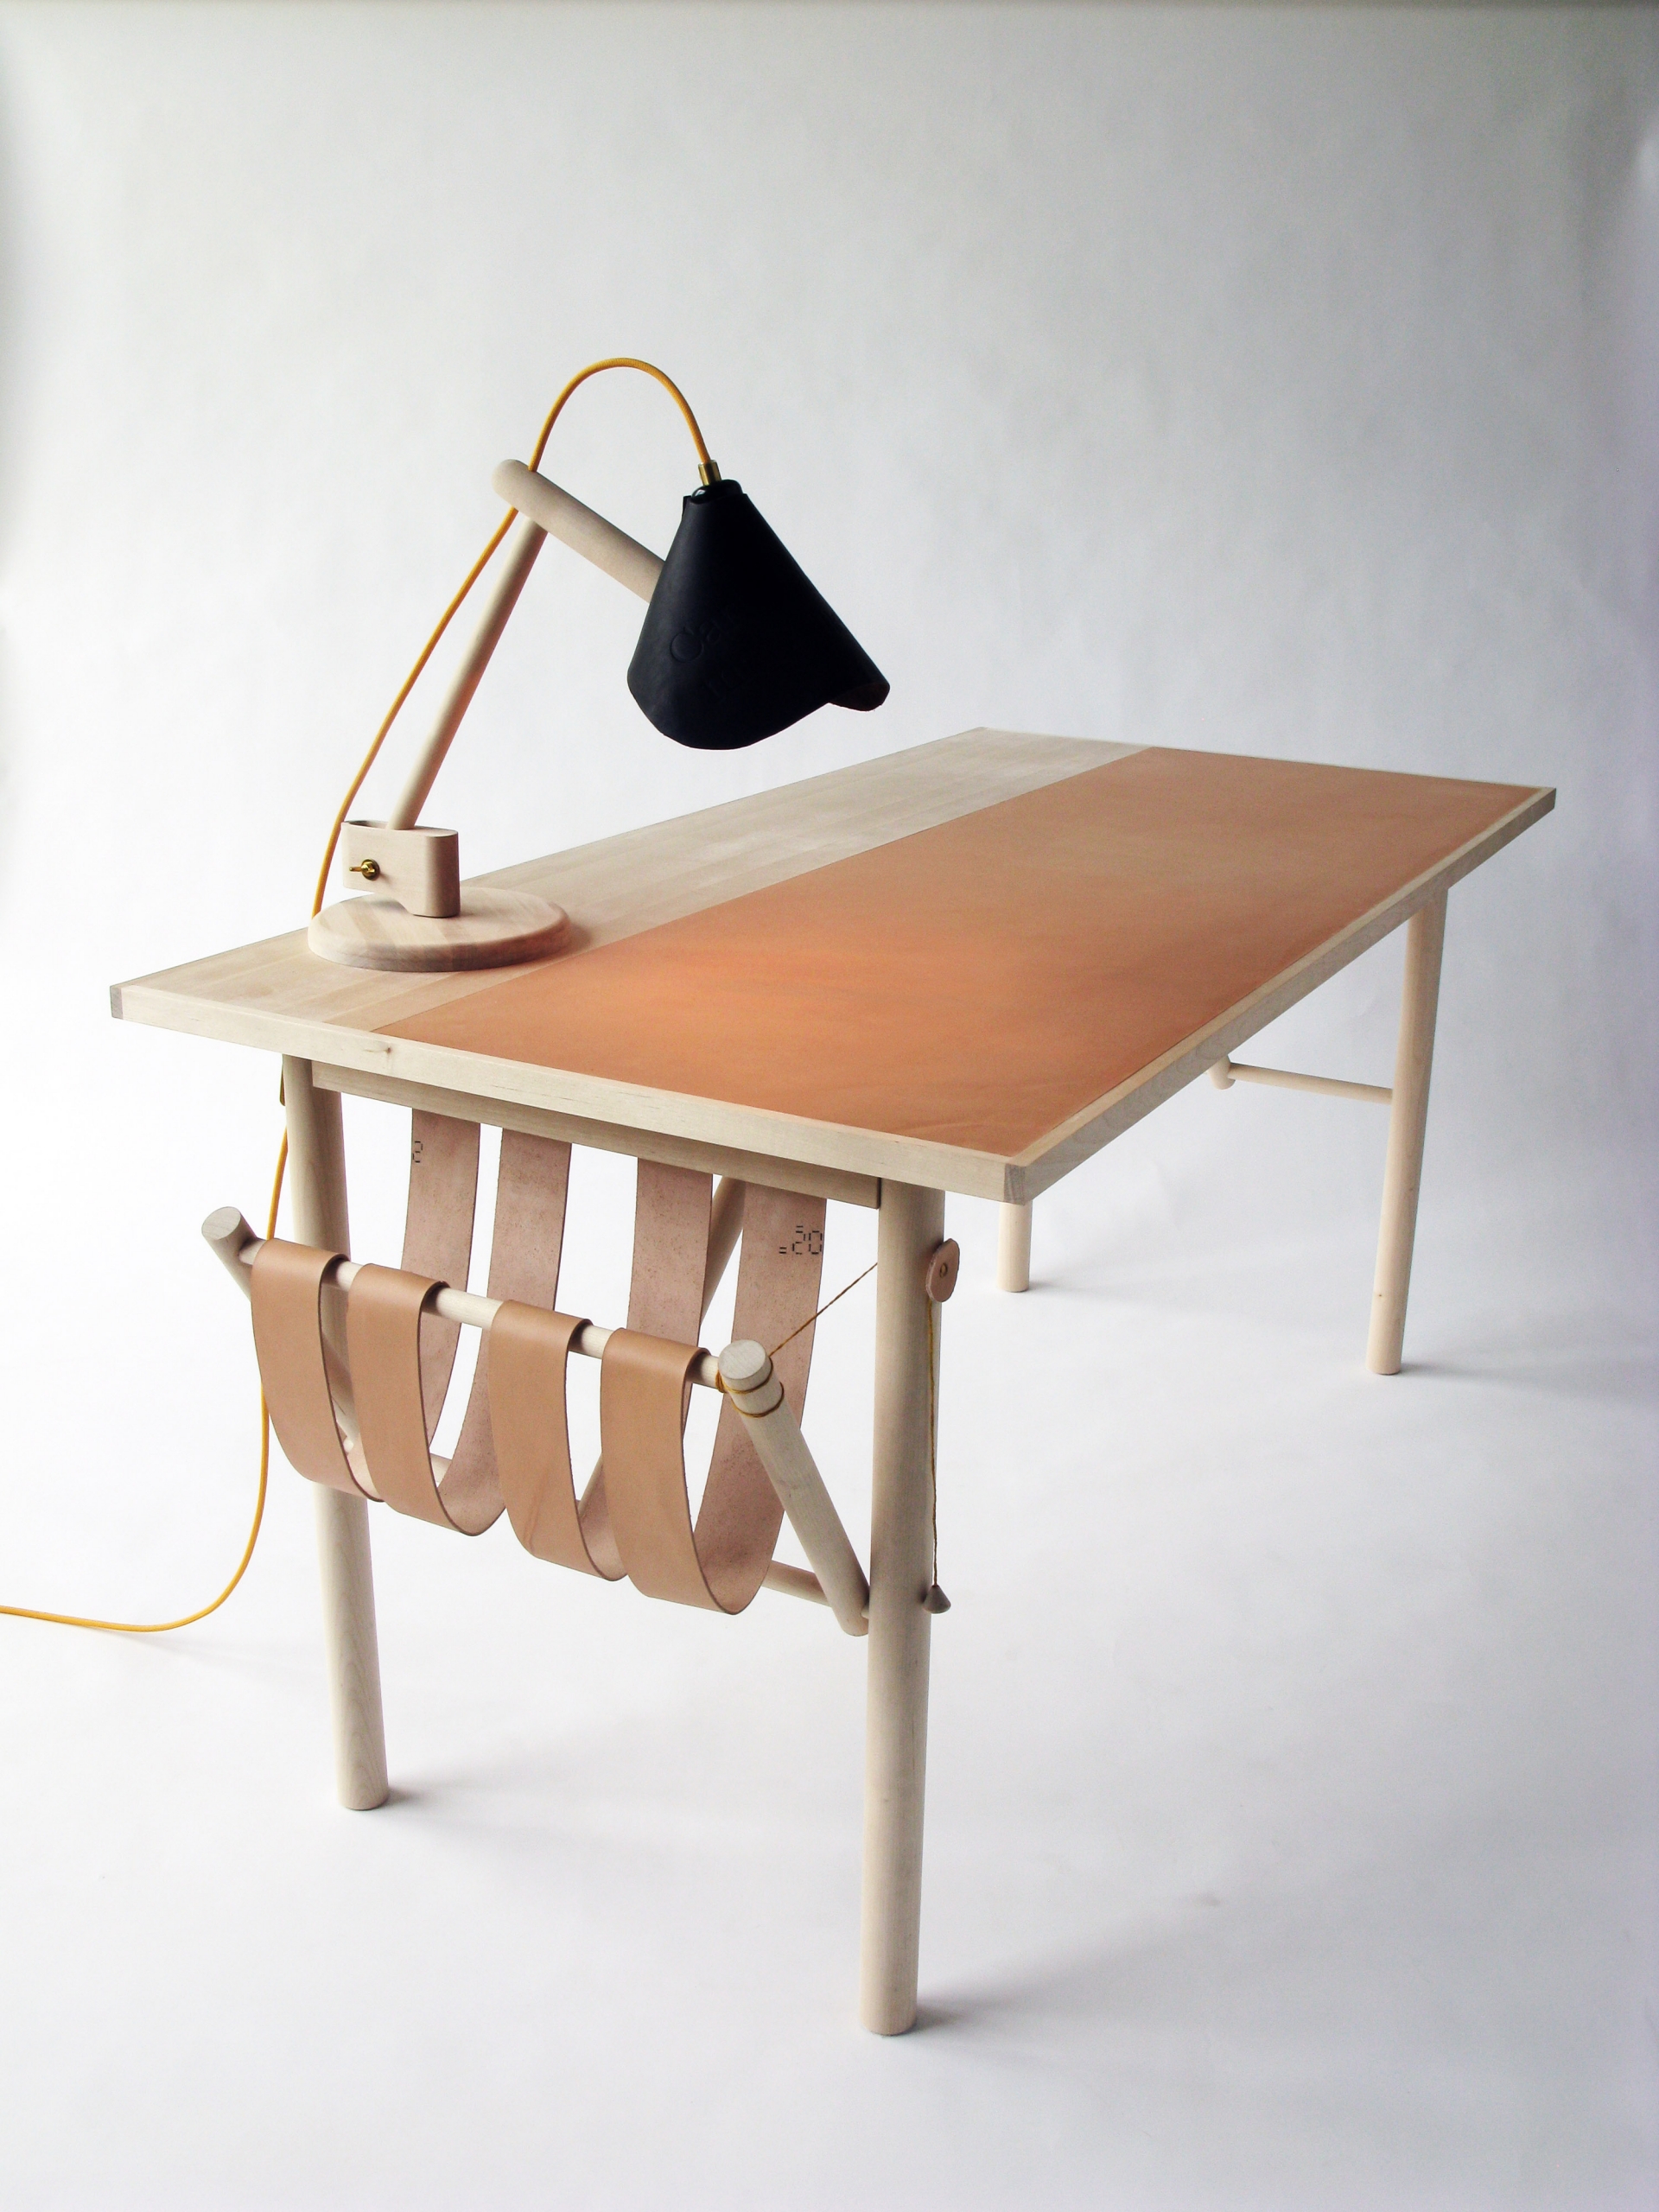 Một thiết kế tựa như 'chiếc võng' với khung bằng gỗ và các tấm giả da mềm mại màu nâu cố định vào cạnh bàn.